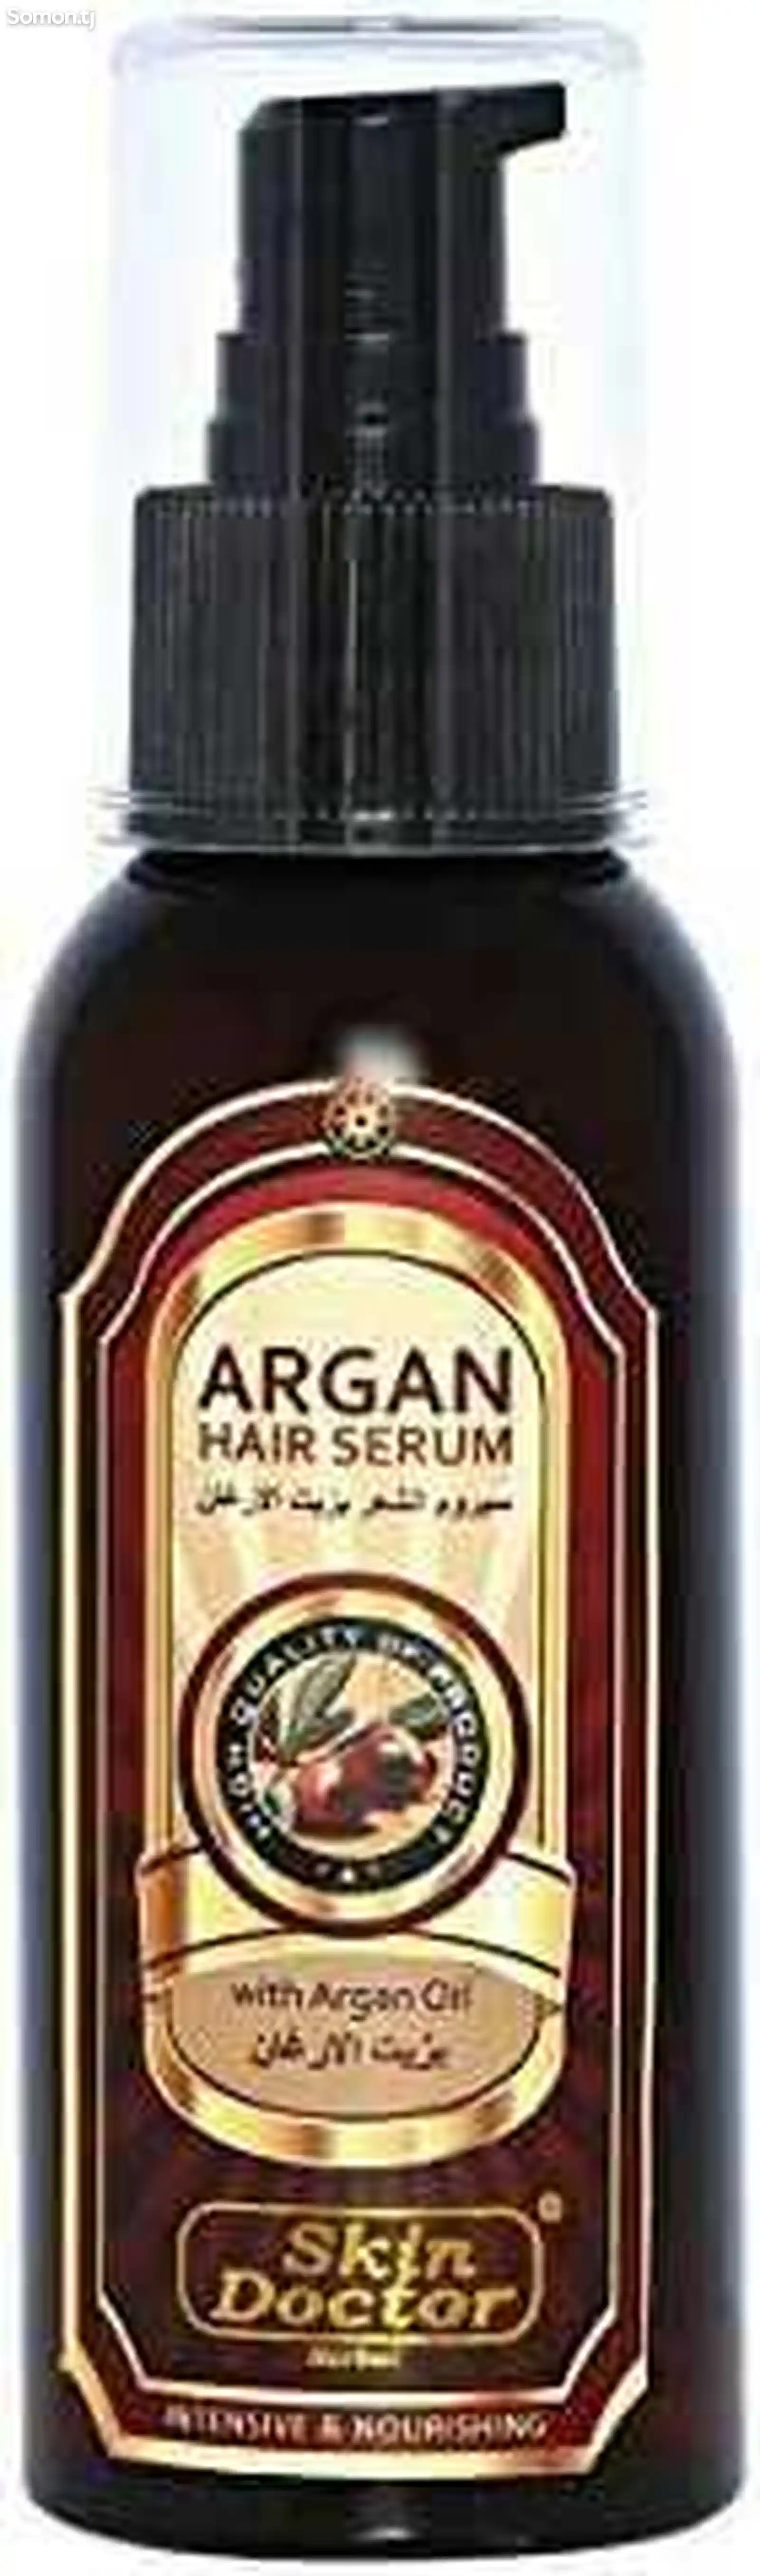 Сыворотка Argan oil Hair serium-6